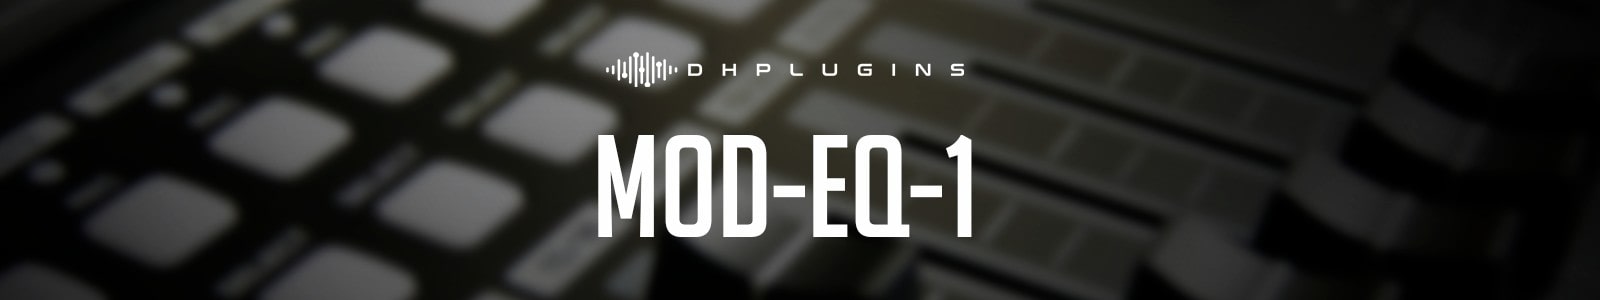 MOD-EQ-1 by DHPlugins